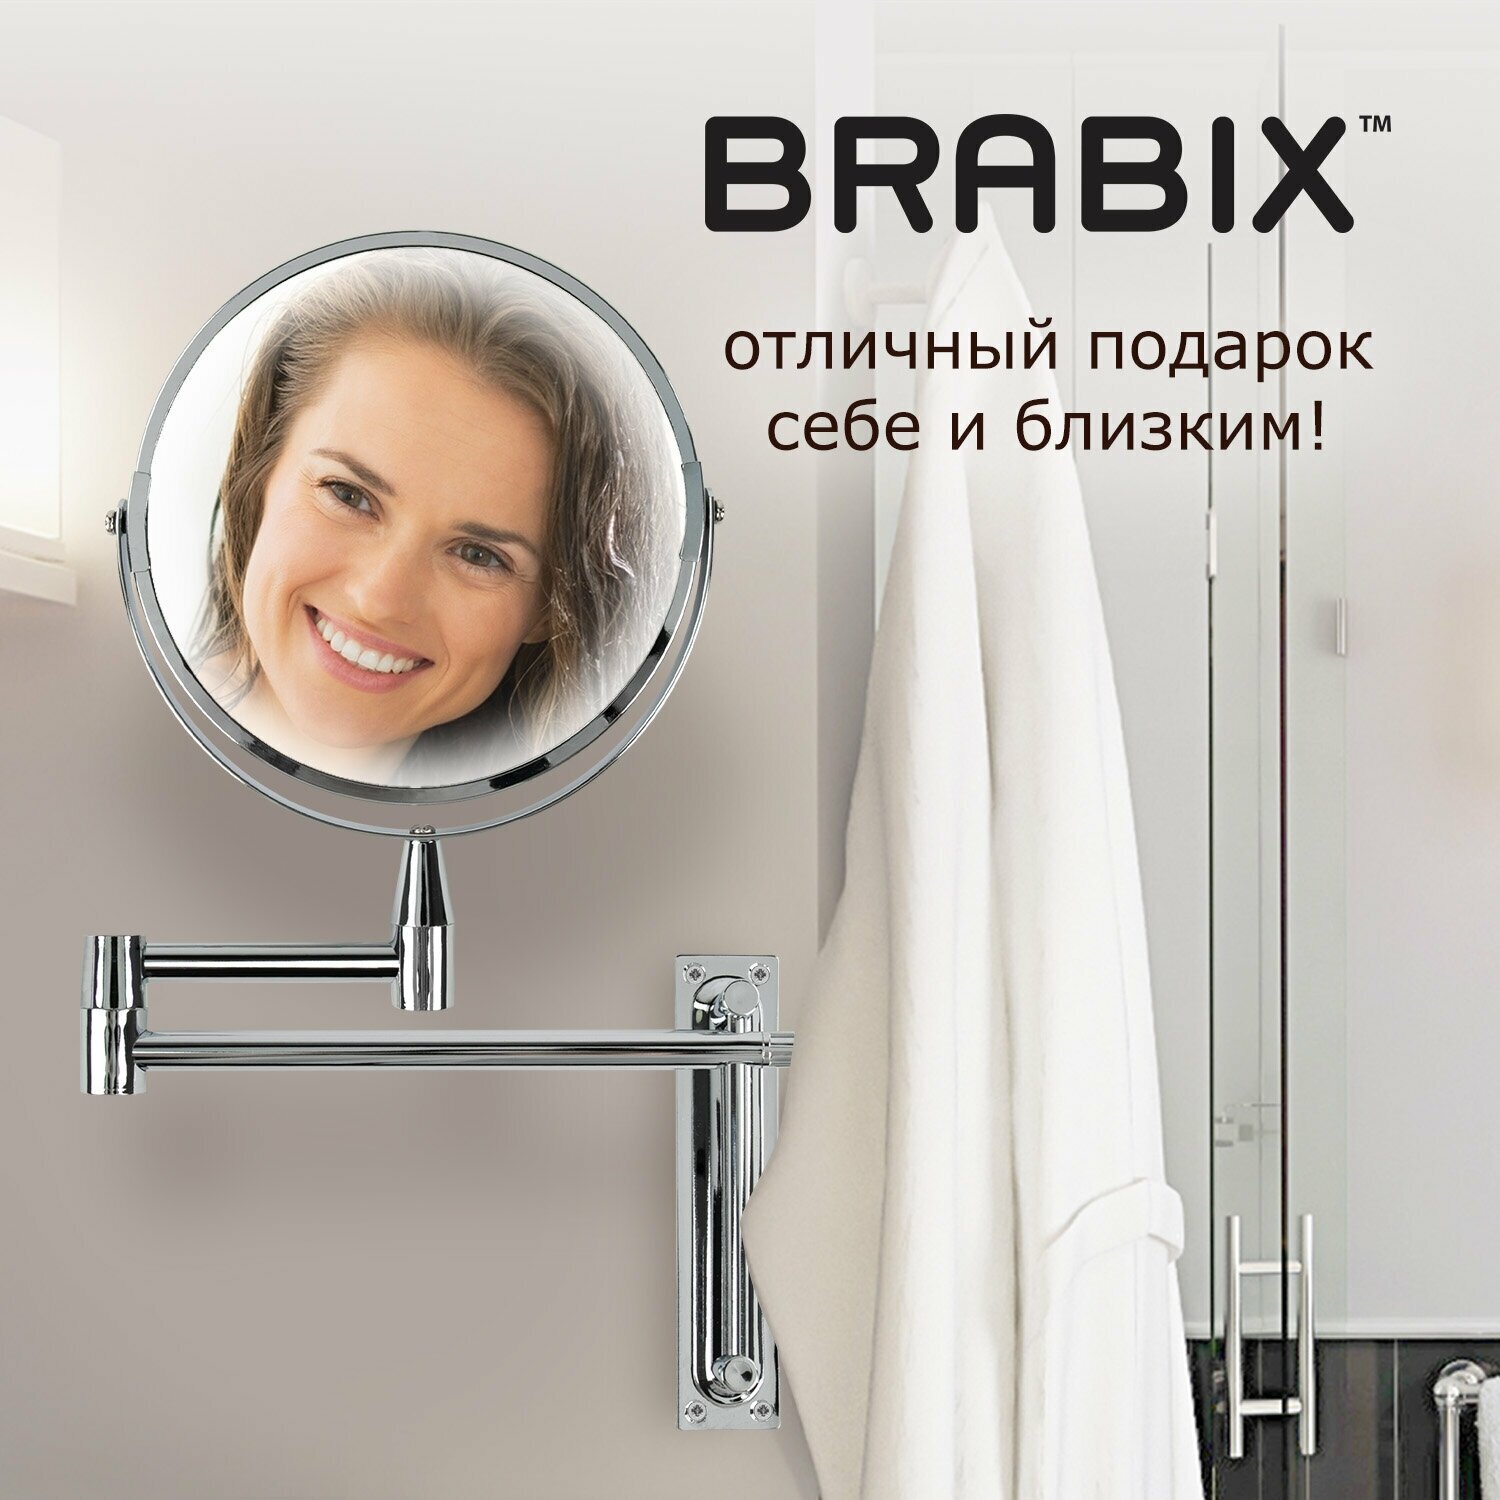 Зеркало настенное для ванной комнаты / для декора интерьера Brabix, диаметр 17 см, двусторонее, с увеличением, нержавеющая сталь, выдвижное (петли)